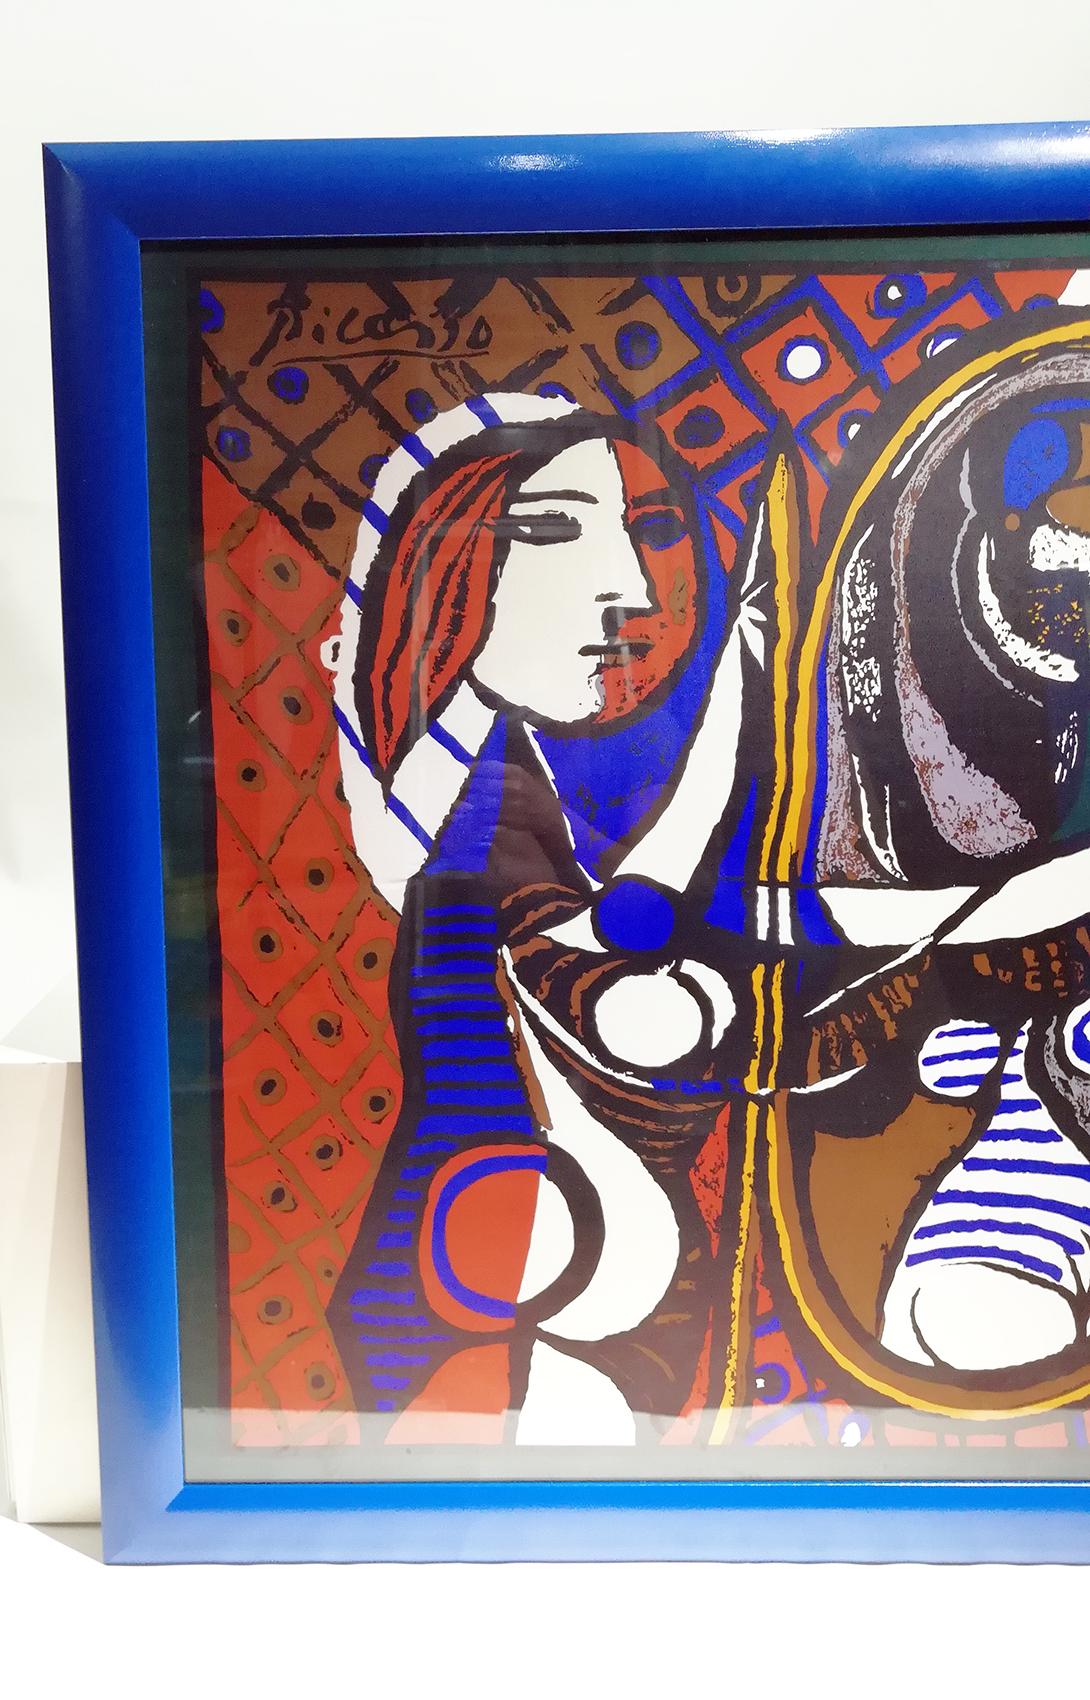 Grand foulard vintage coloré, représentant une femme avec son nouveau né aux couleurs rouge, bleu, jaune et blanc, sur un fond abstrait. 
Portant la signature de l'artiste PICASSO dans le coin supérieur gauche. 
Pablo Picasso (1881-1973) était un